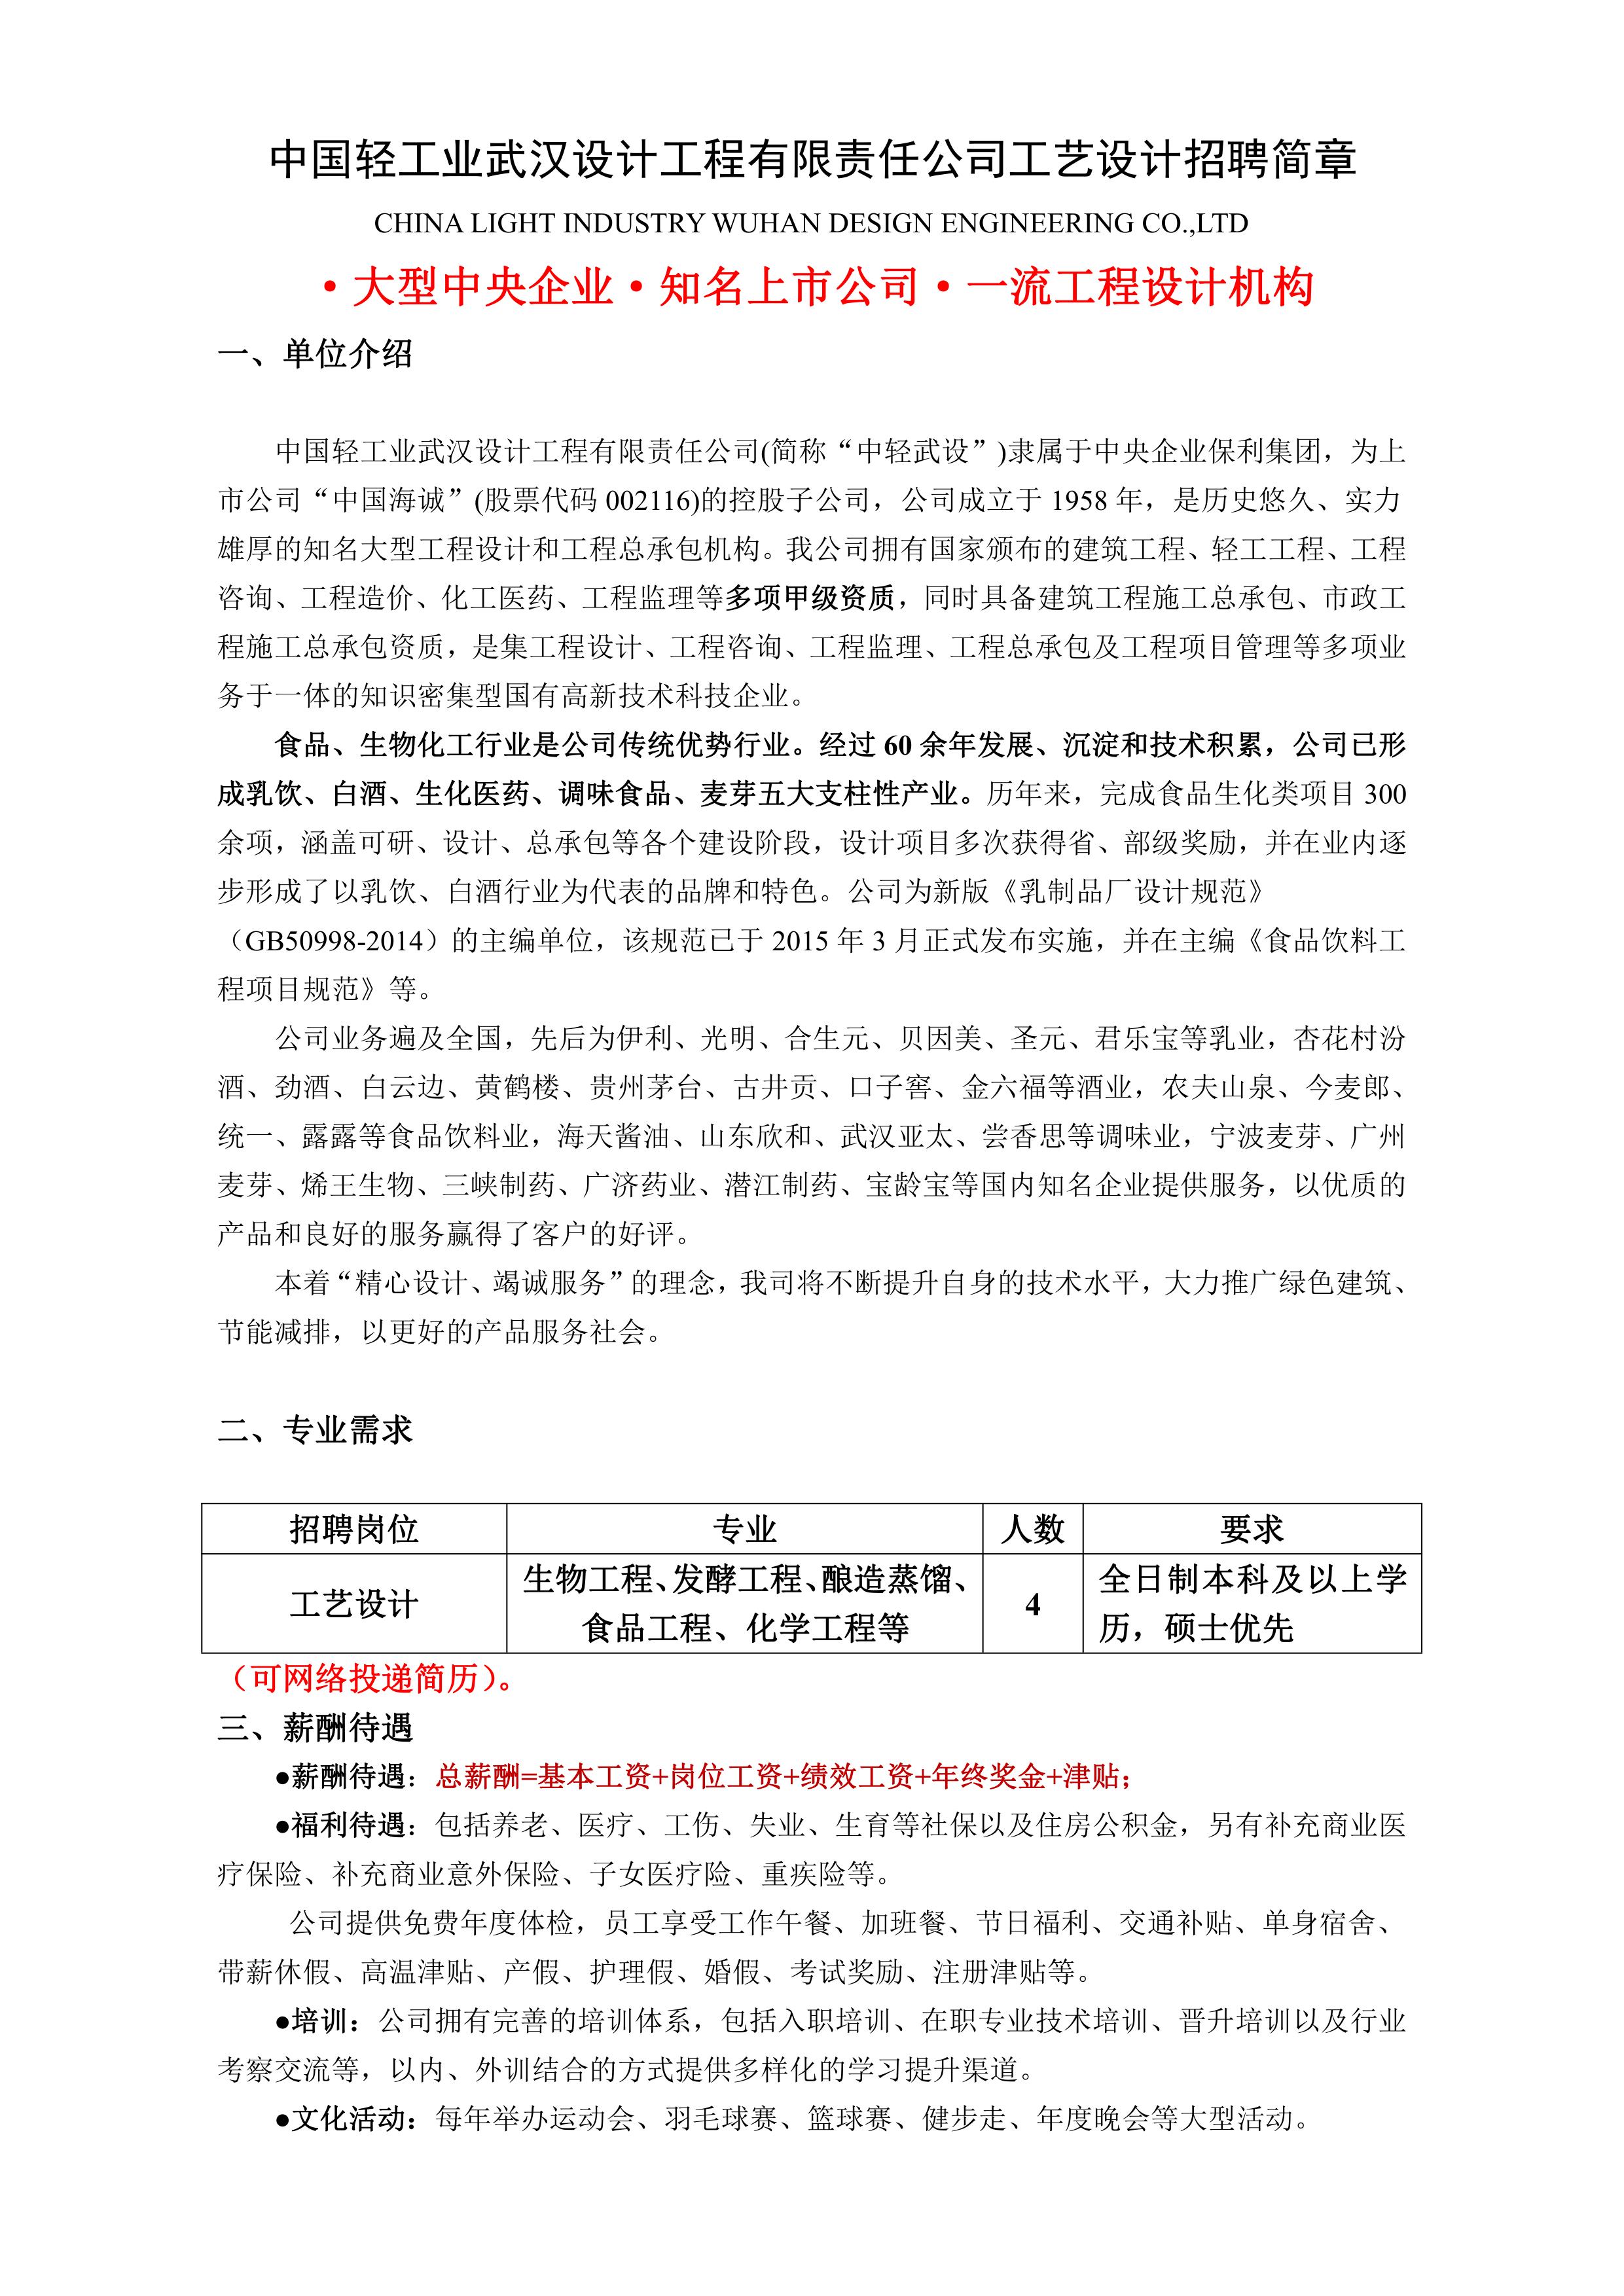 中国轻工业武汉设计工程有限责任公司工艺设计岗招聘简章_1.jpg